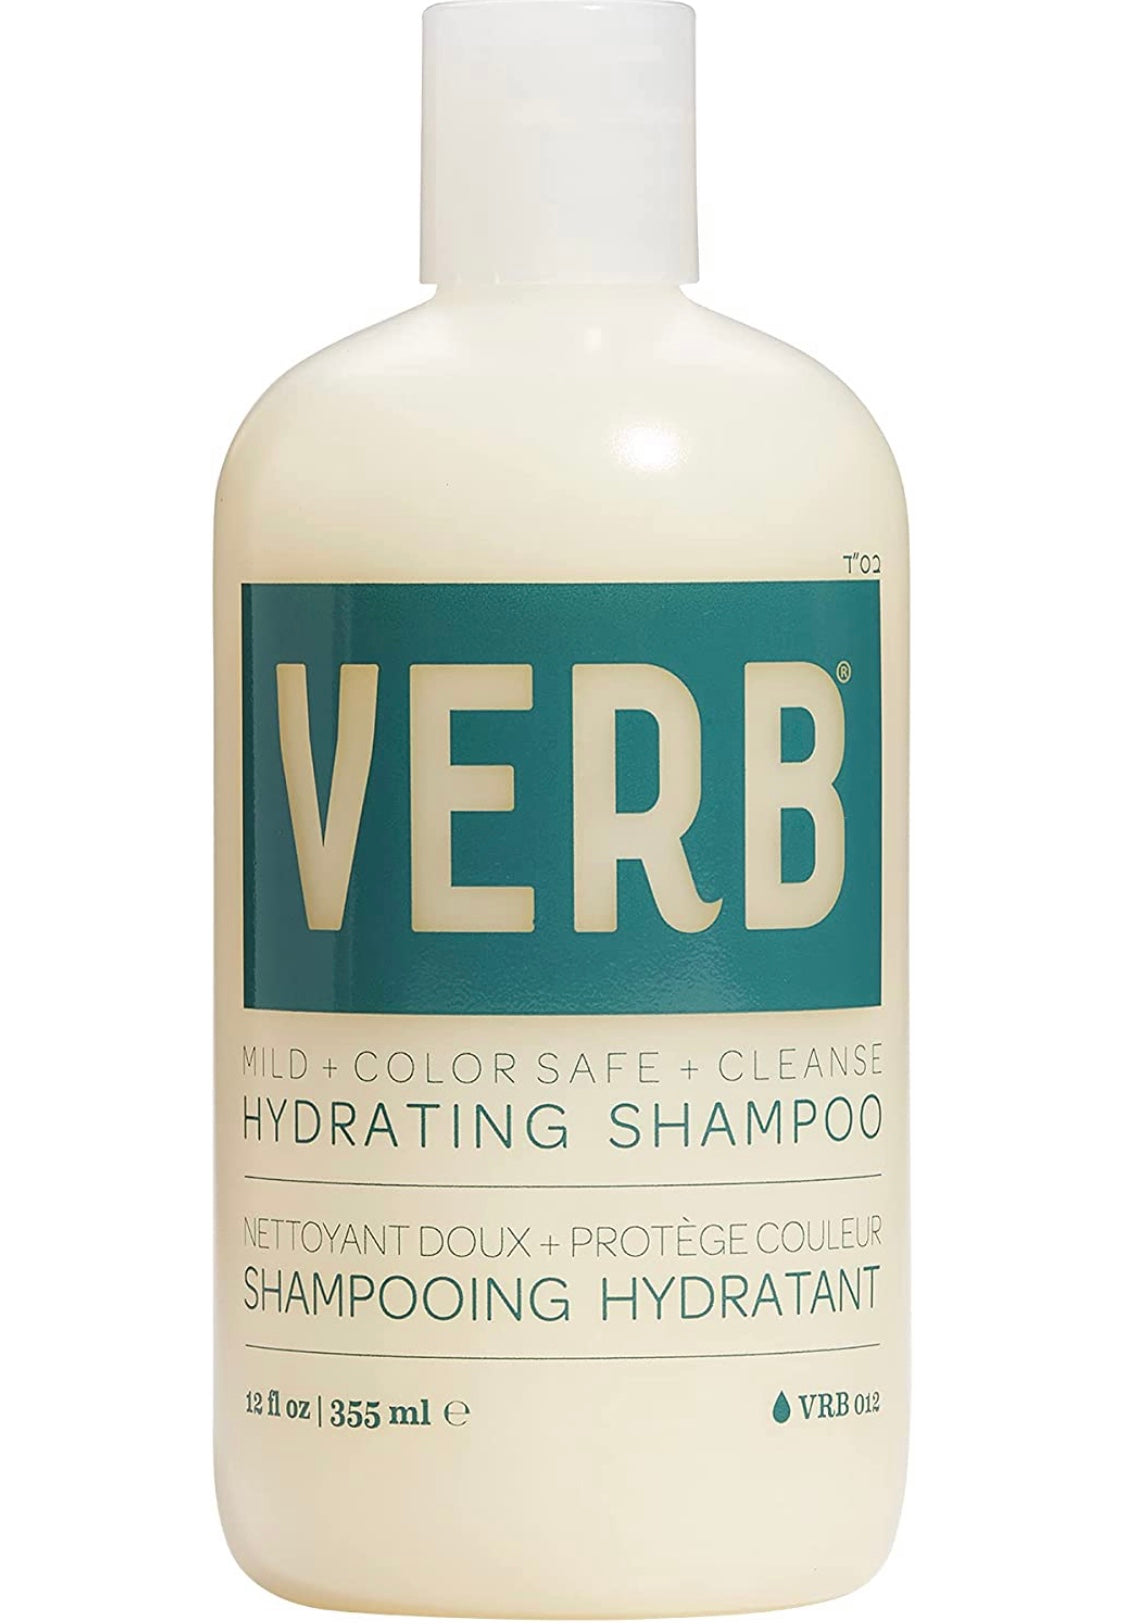 Verb - Hydrating shampoo 12 fl. oz./ 355 ml